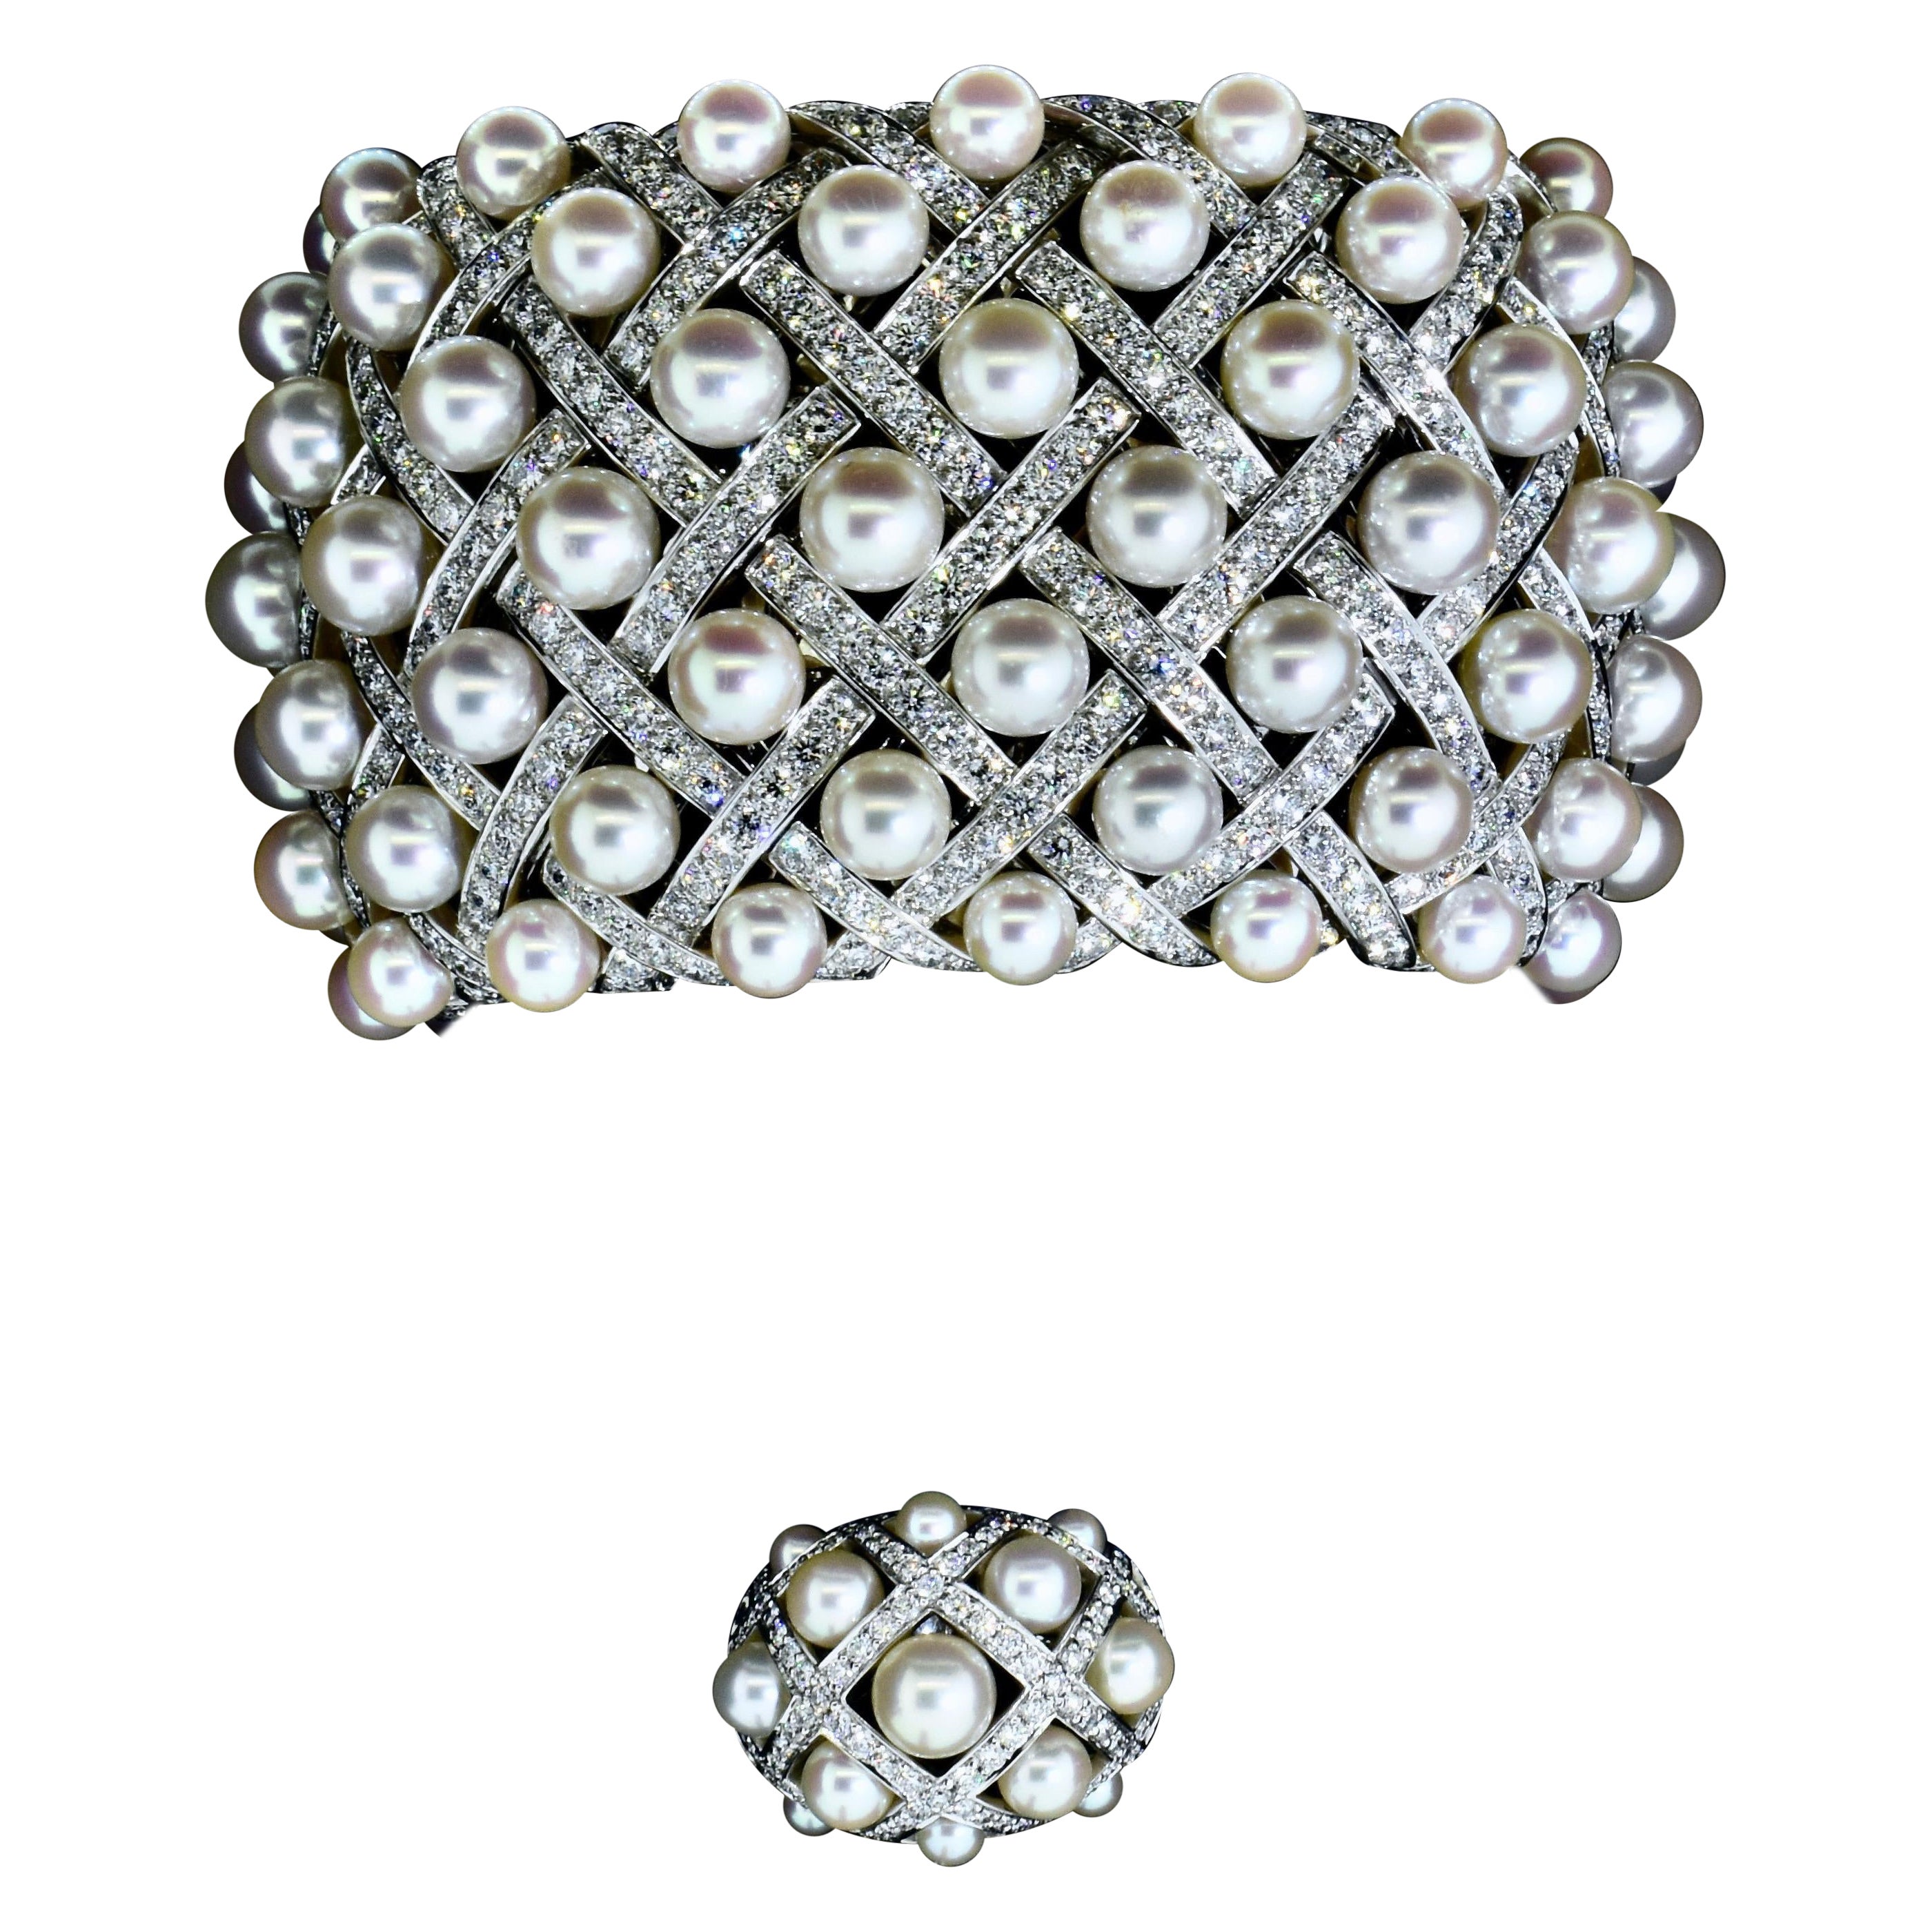 Bracelet bangle Chanel Paris Matelasse en perles et diamants pavés et bague assortie, accompagnés de la lettre originale de Chanel à la cliente d'origine (et évalués tout récemment en 2018 à un peu plus de 300 000 USD).
Même si l'on se contente